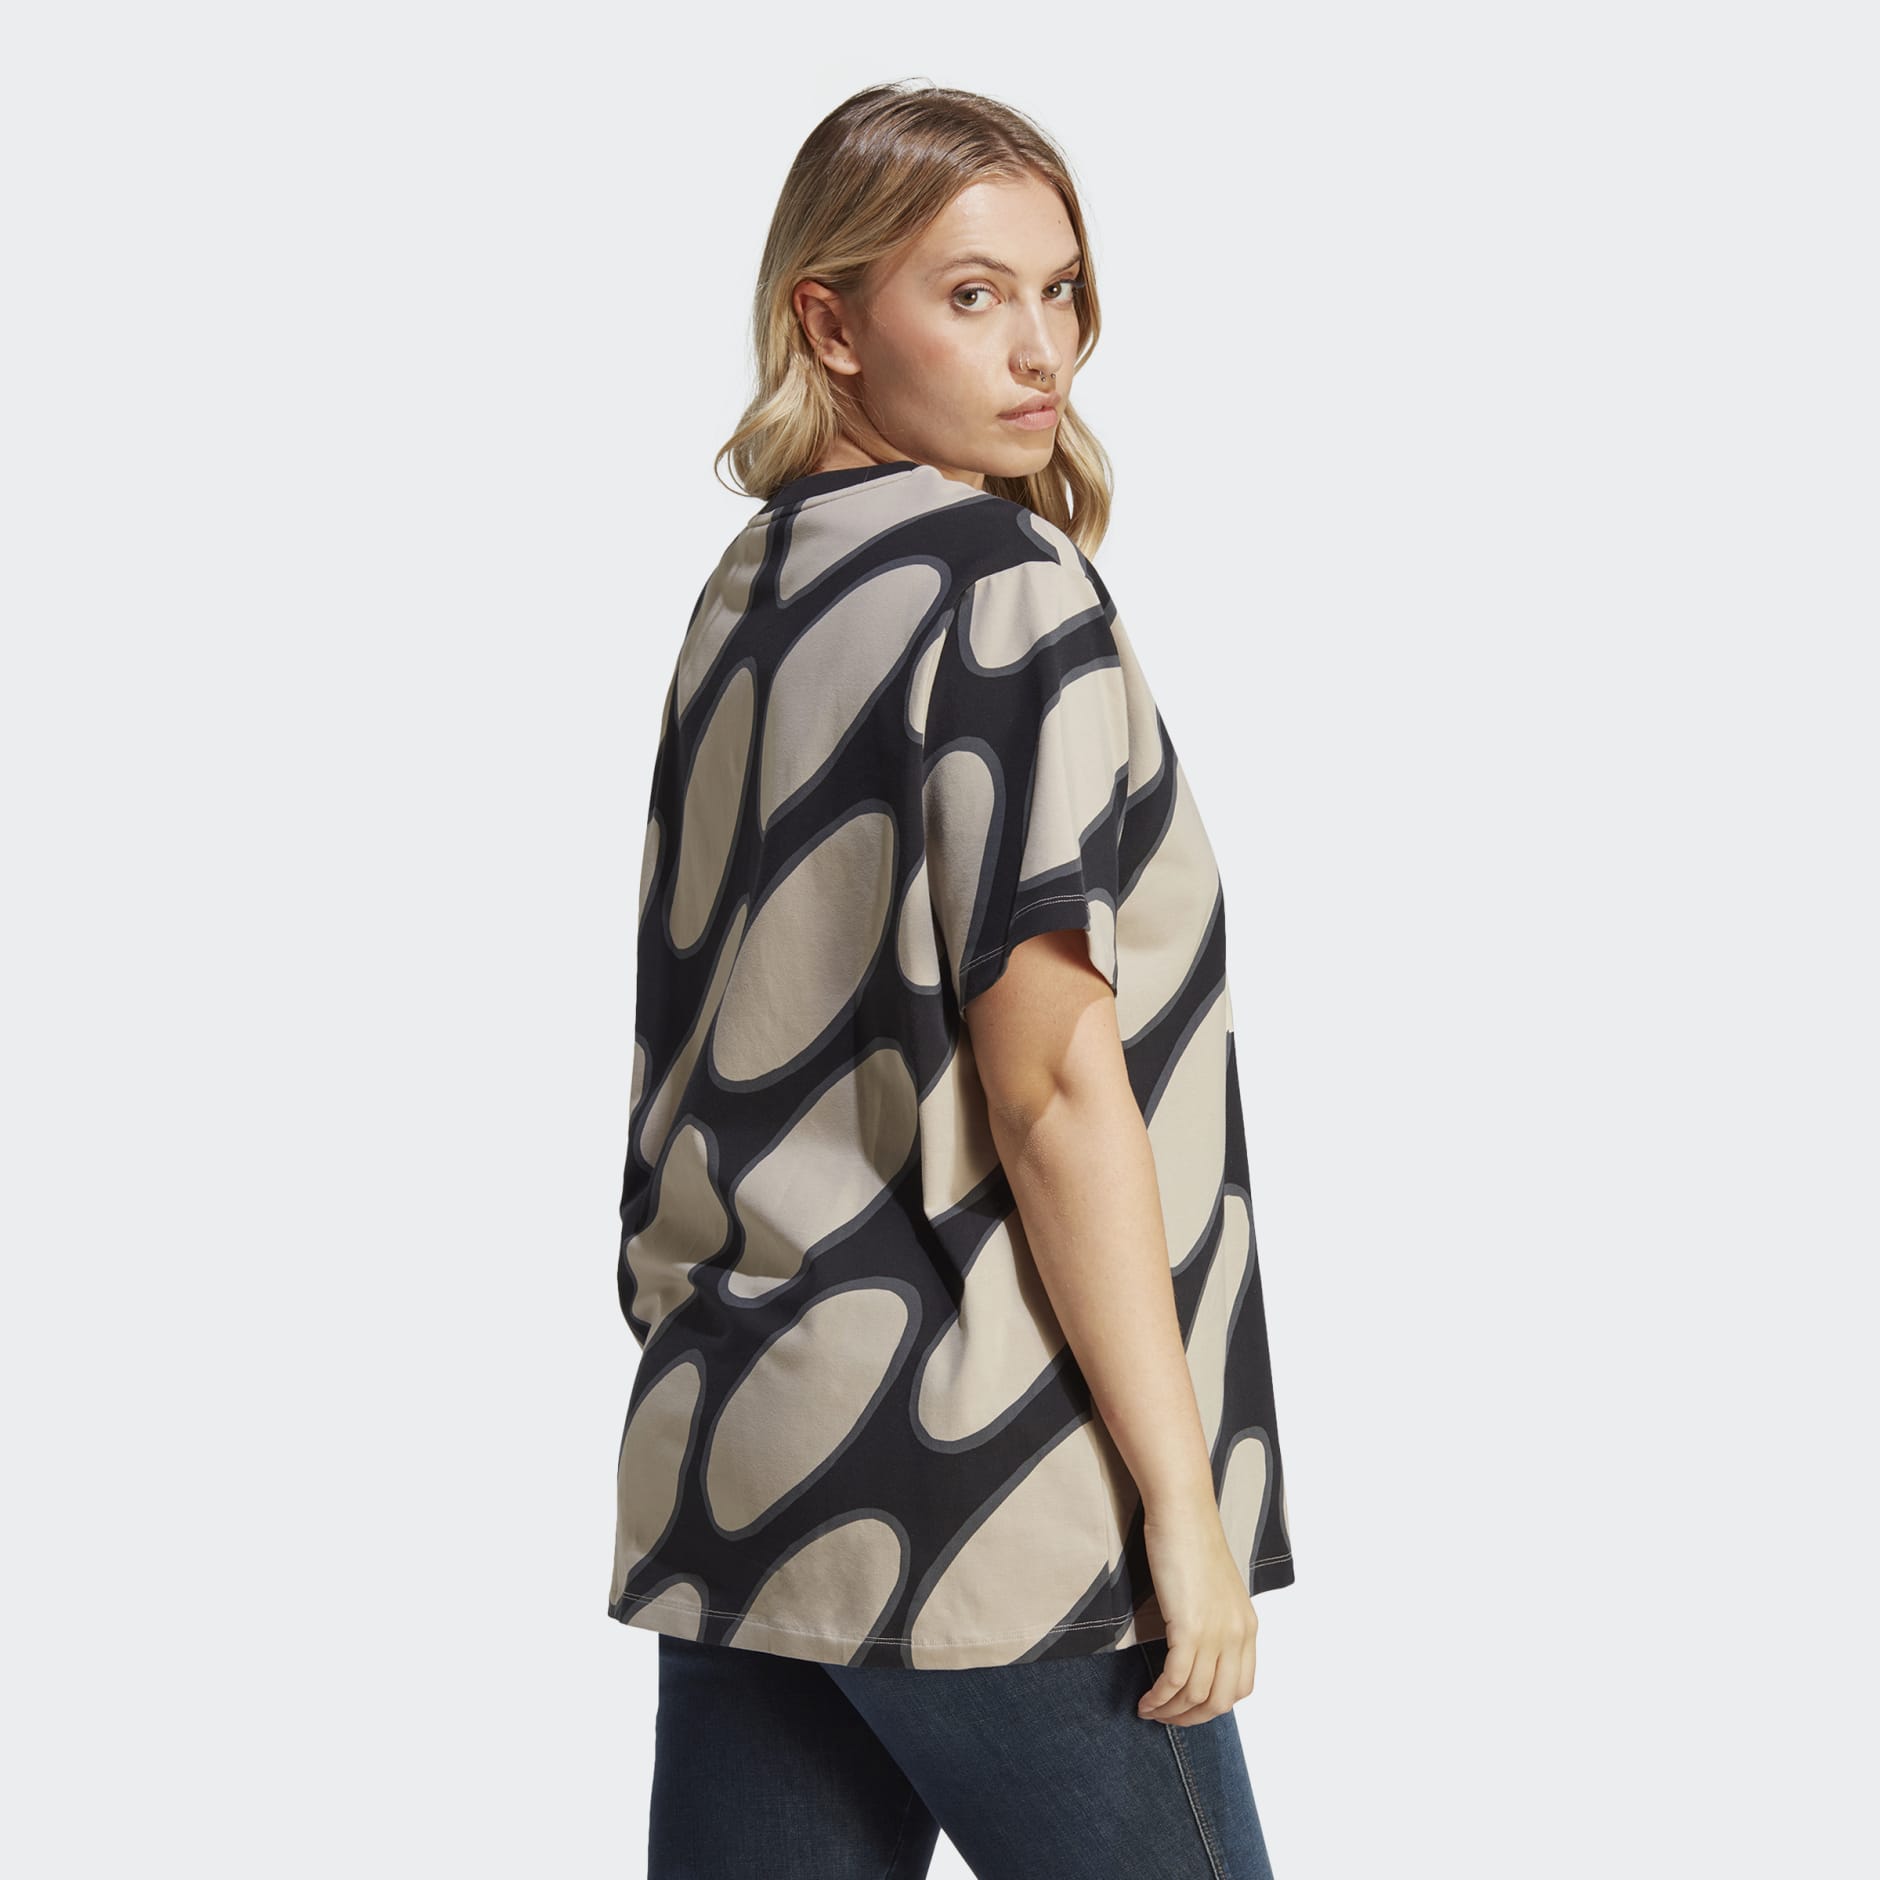 Clothing - Marimekko Allover Print Shirt - Multicolour